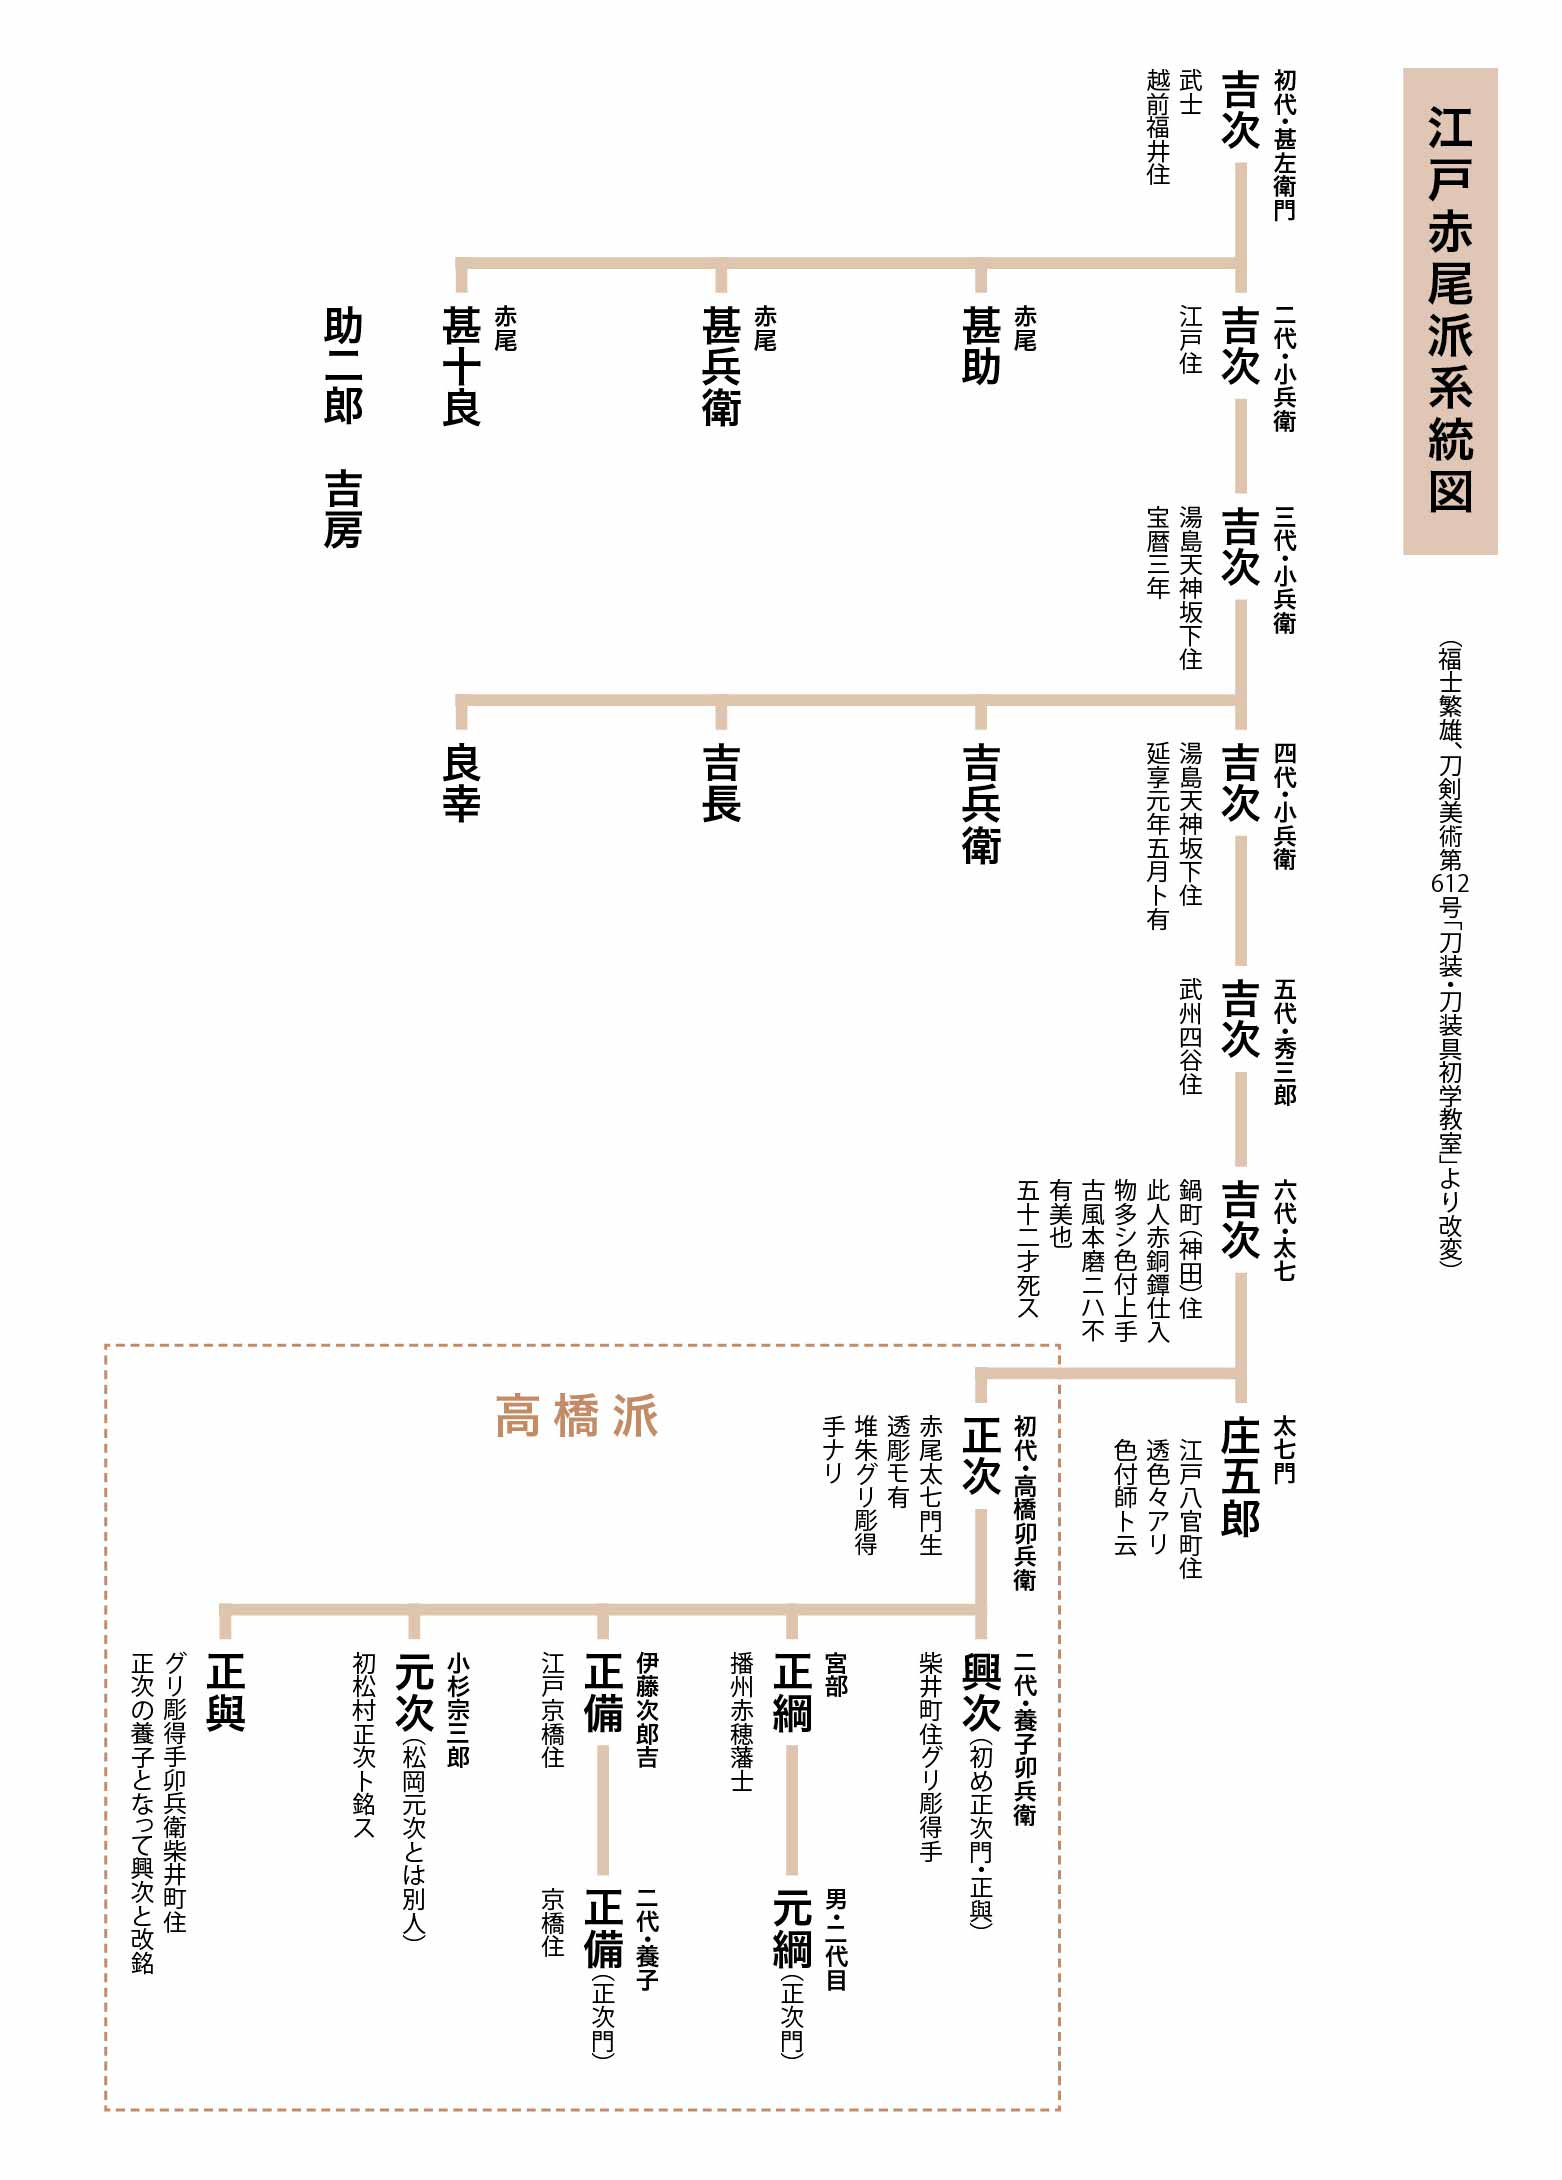 Genealogy of the Edo Akao School